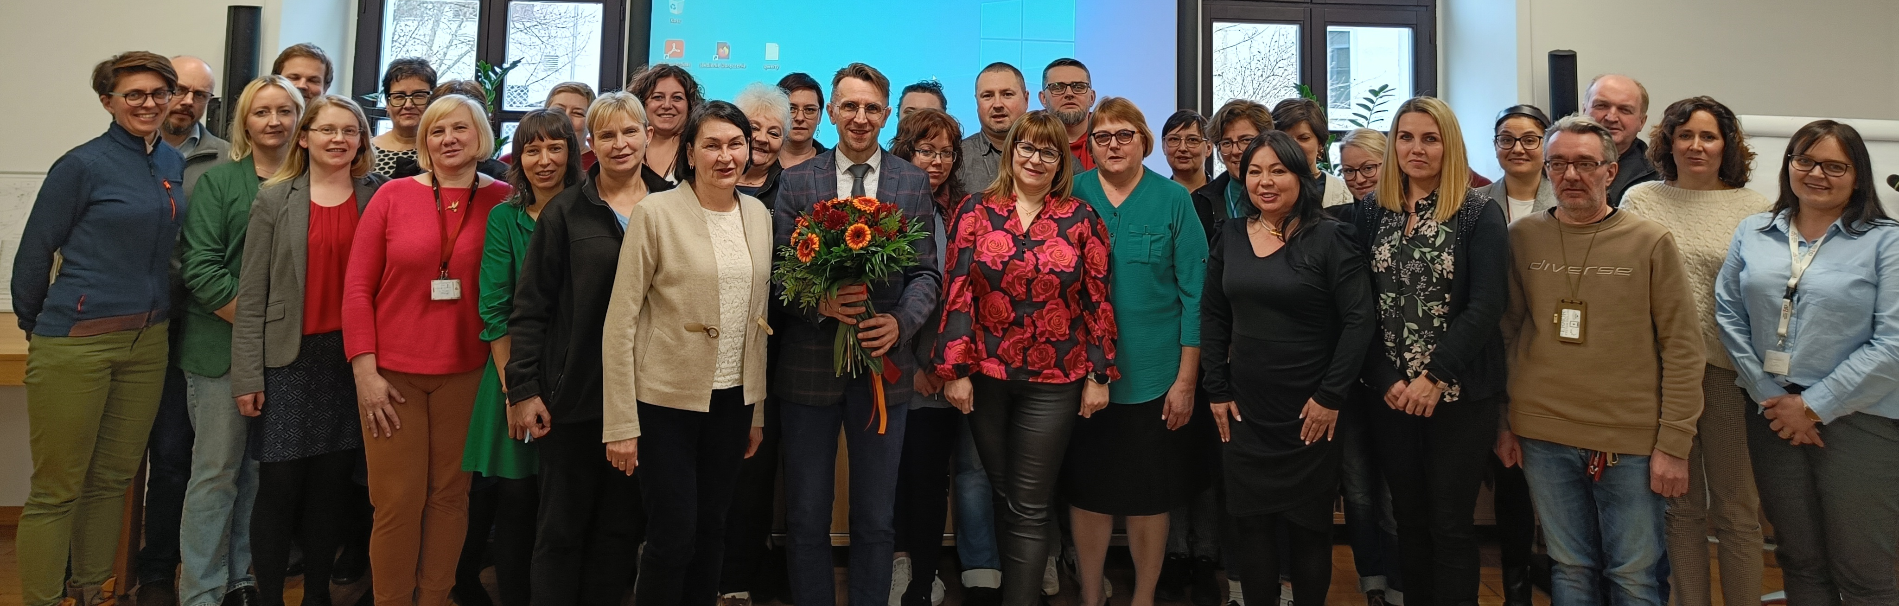 Zdjęcie grupowe wszystkich pracowników Archiwum, pośrodku Dyrektor dr Sławomir Marchel z kwiatami